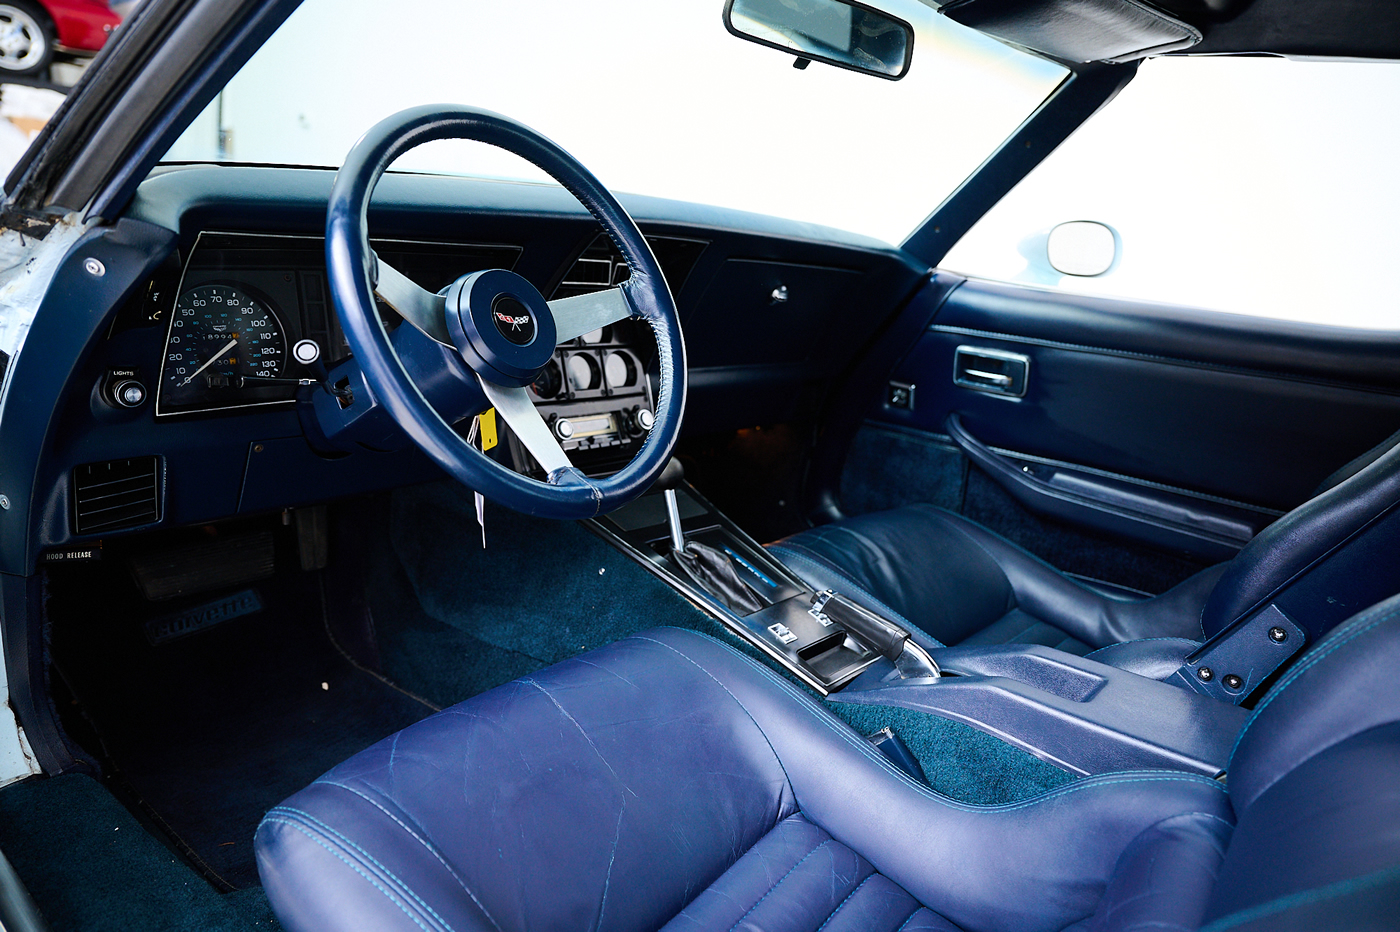 1979 Corvette L82 in Corvette Light Blue